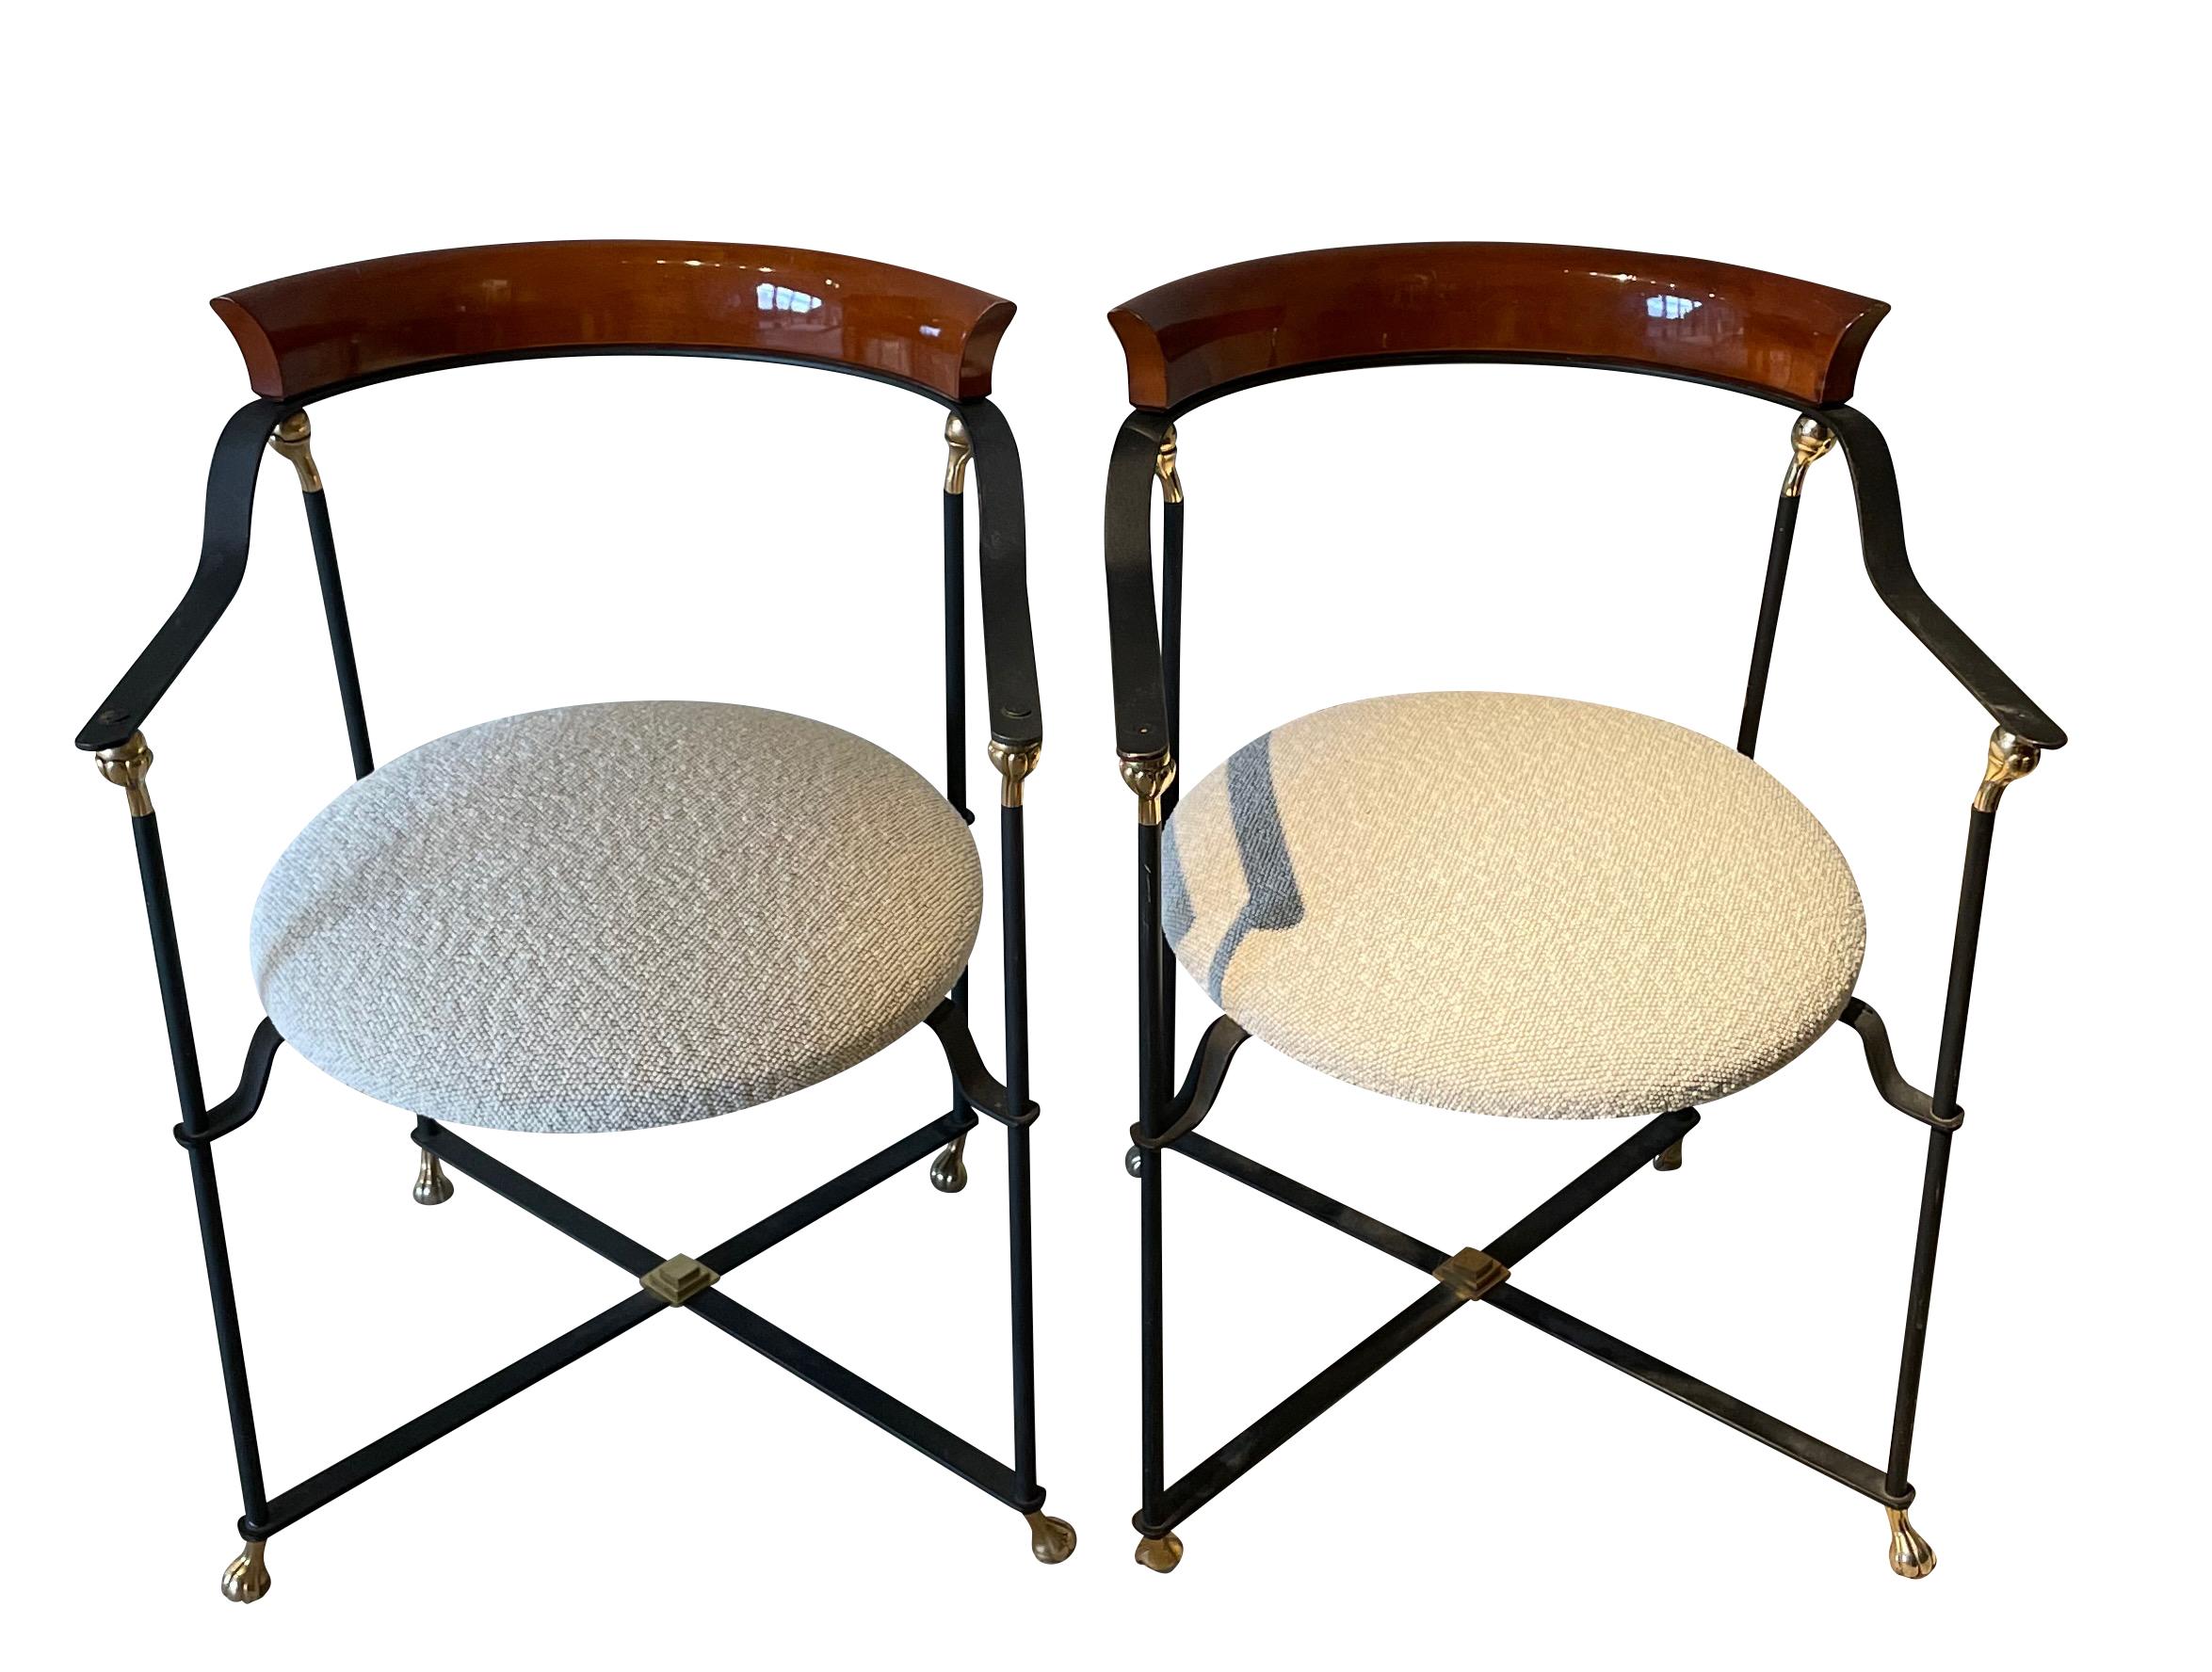 1970er Jahre Französisch Paar schwarzem Metall gerahmt Stühle mit gebogenen polierten Palissndre zurück zu unterstützen.
Dekorative Messing-Akzente.
X-Basistrainer.
Der Sitz wurde vor kurzem mit Boucle-Stoff neu bezogen.
Kann als Ess- oder